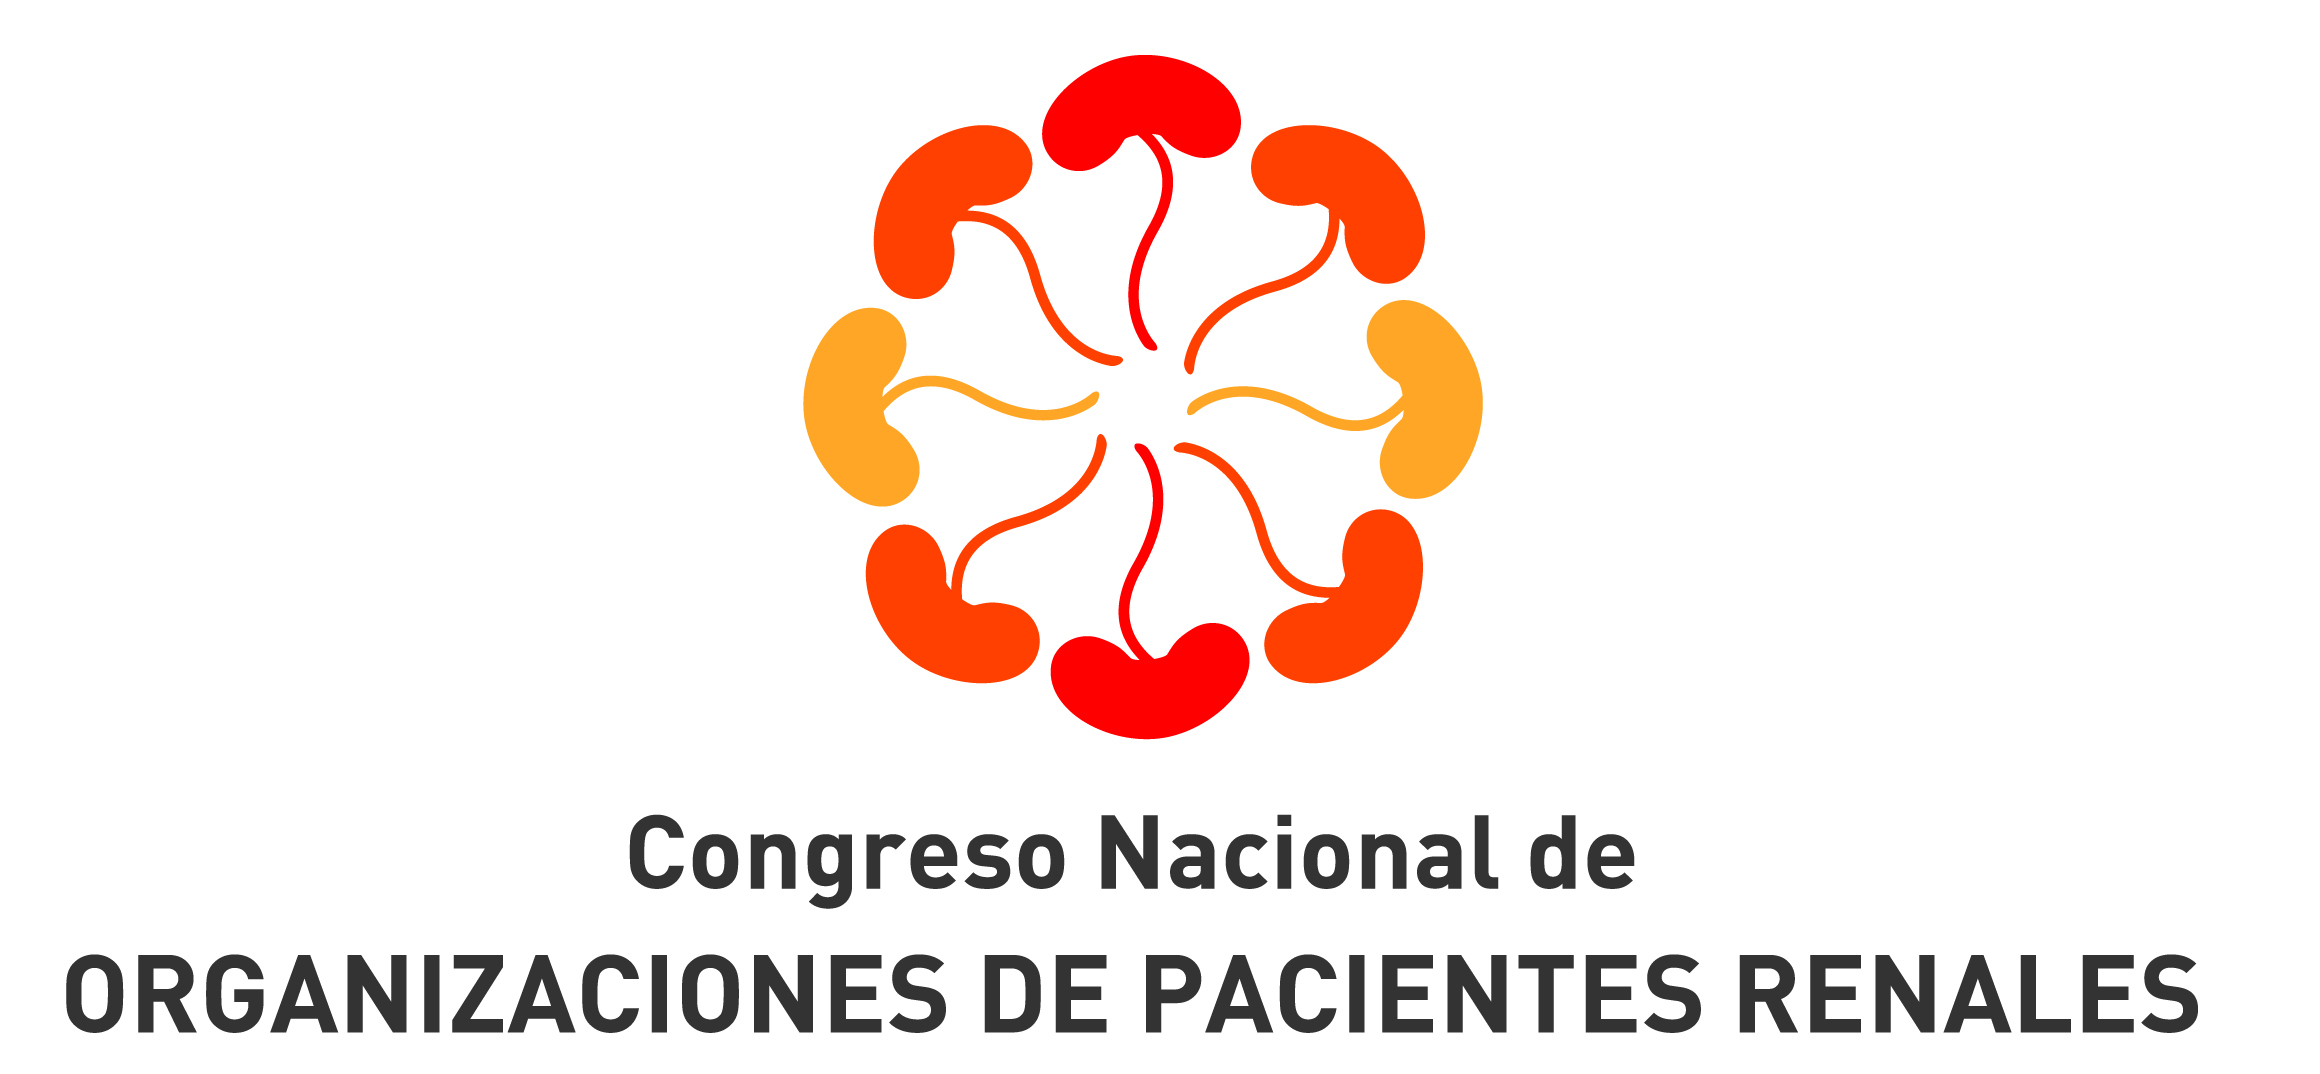 1er. Congreso Nacional de Organizaciones de Pacientes Renales